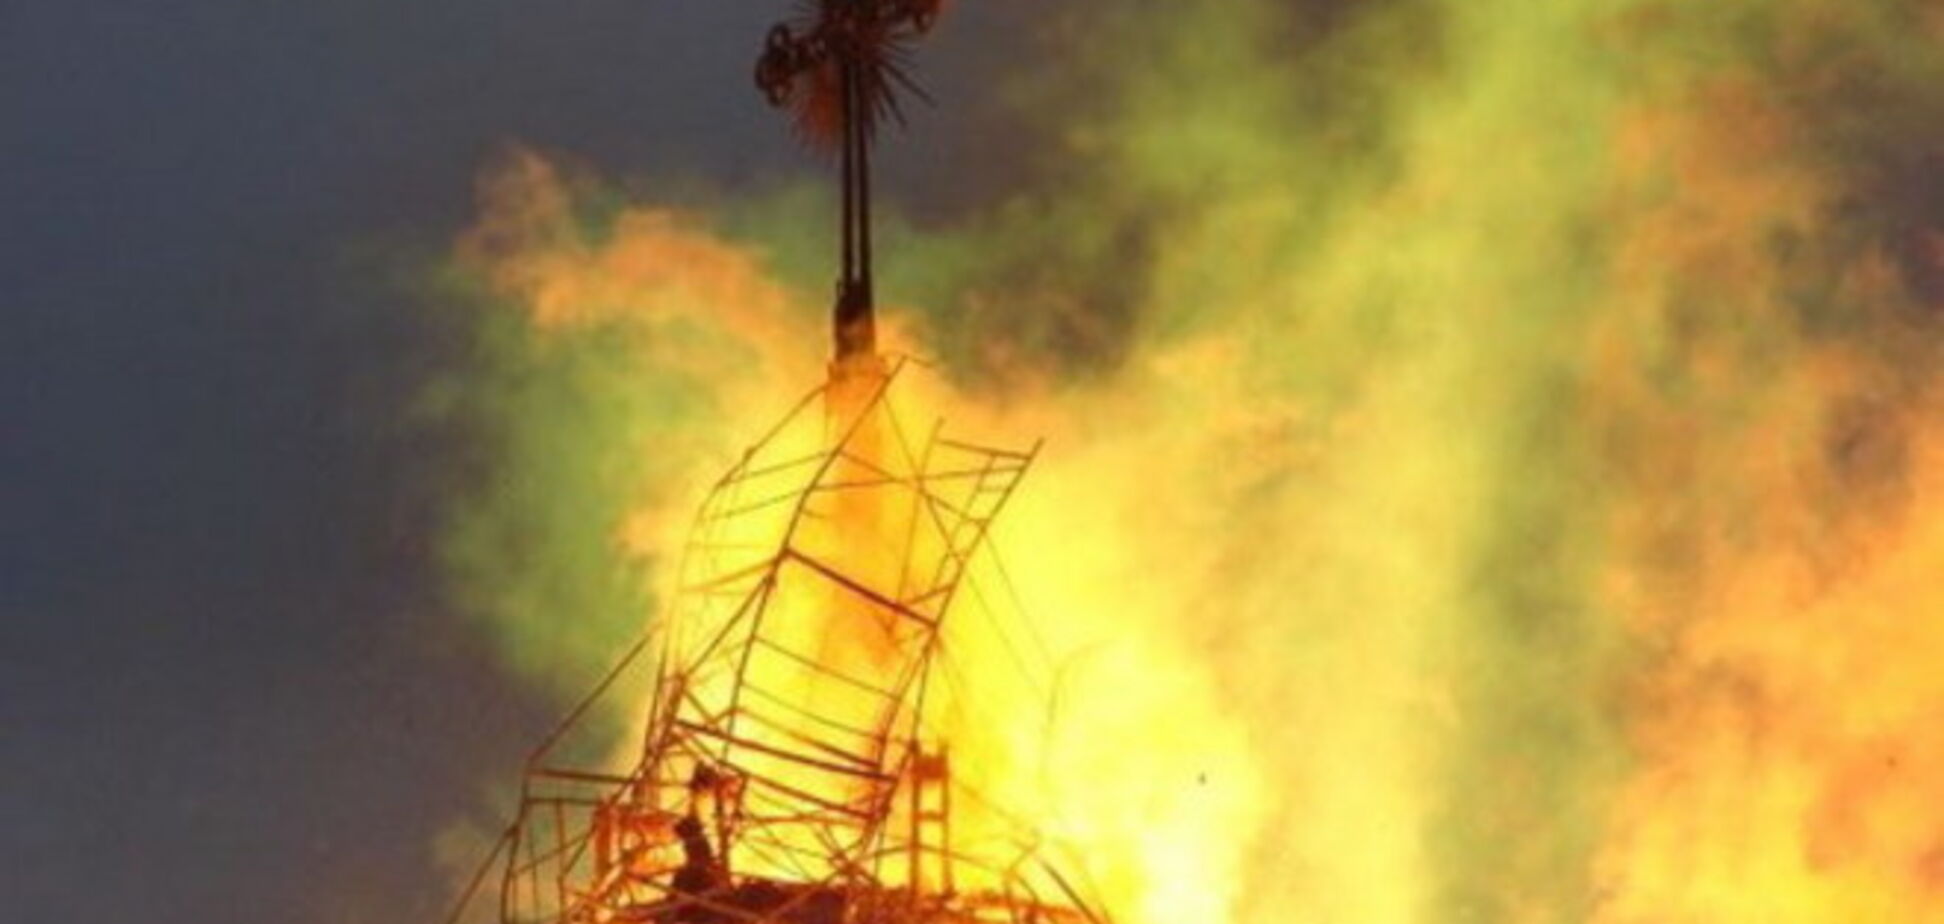 Через потрапляння блискавки згоріла церква московського патріархату